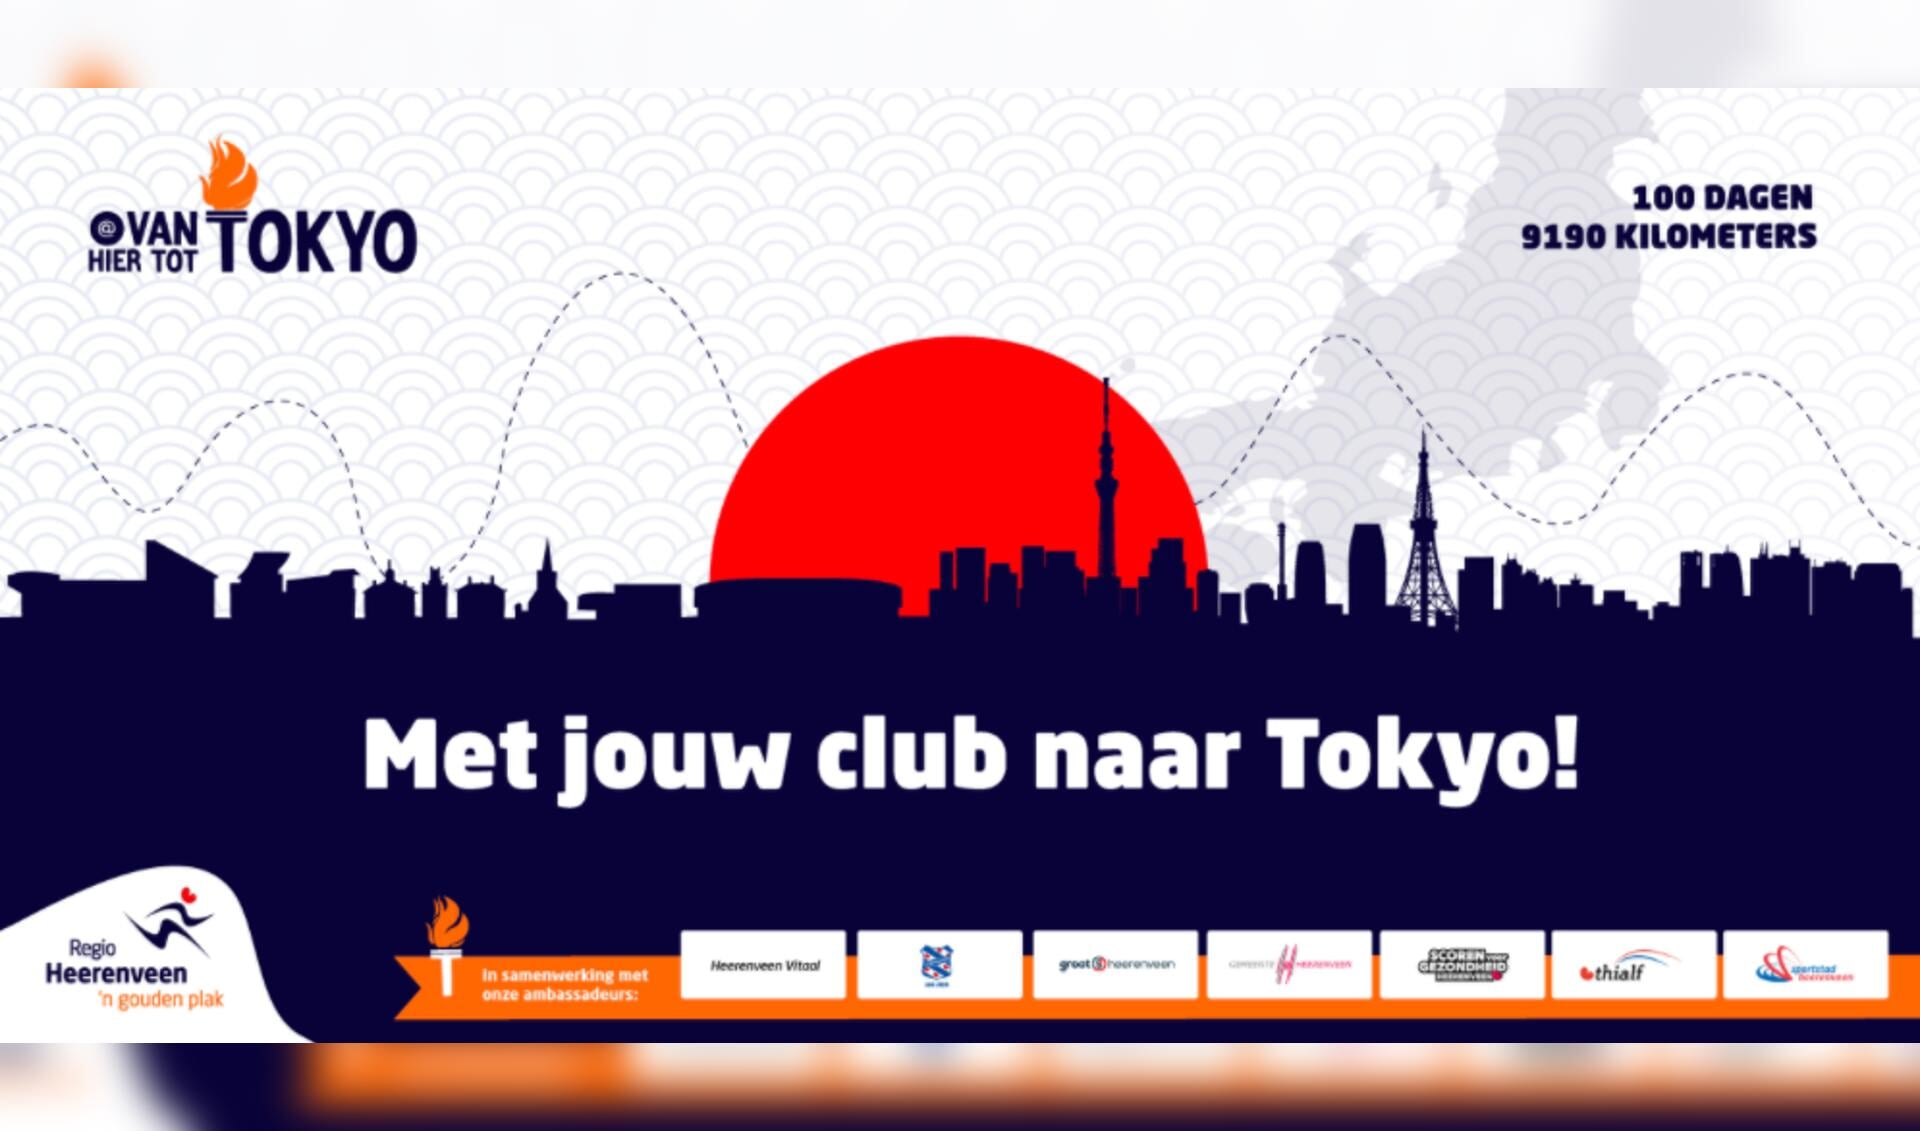 Van Hier tot Tokyo daagt alle sportclubs van Heerenveen uit en stelt mooie prijzen ter beschikking.